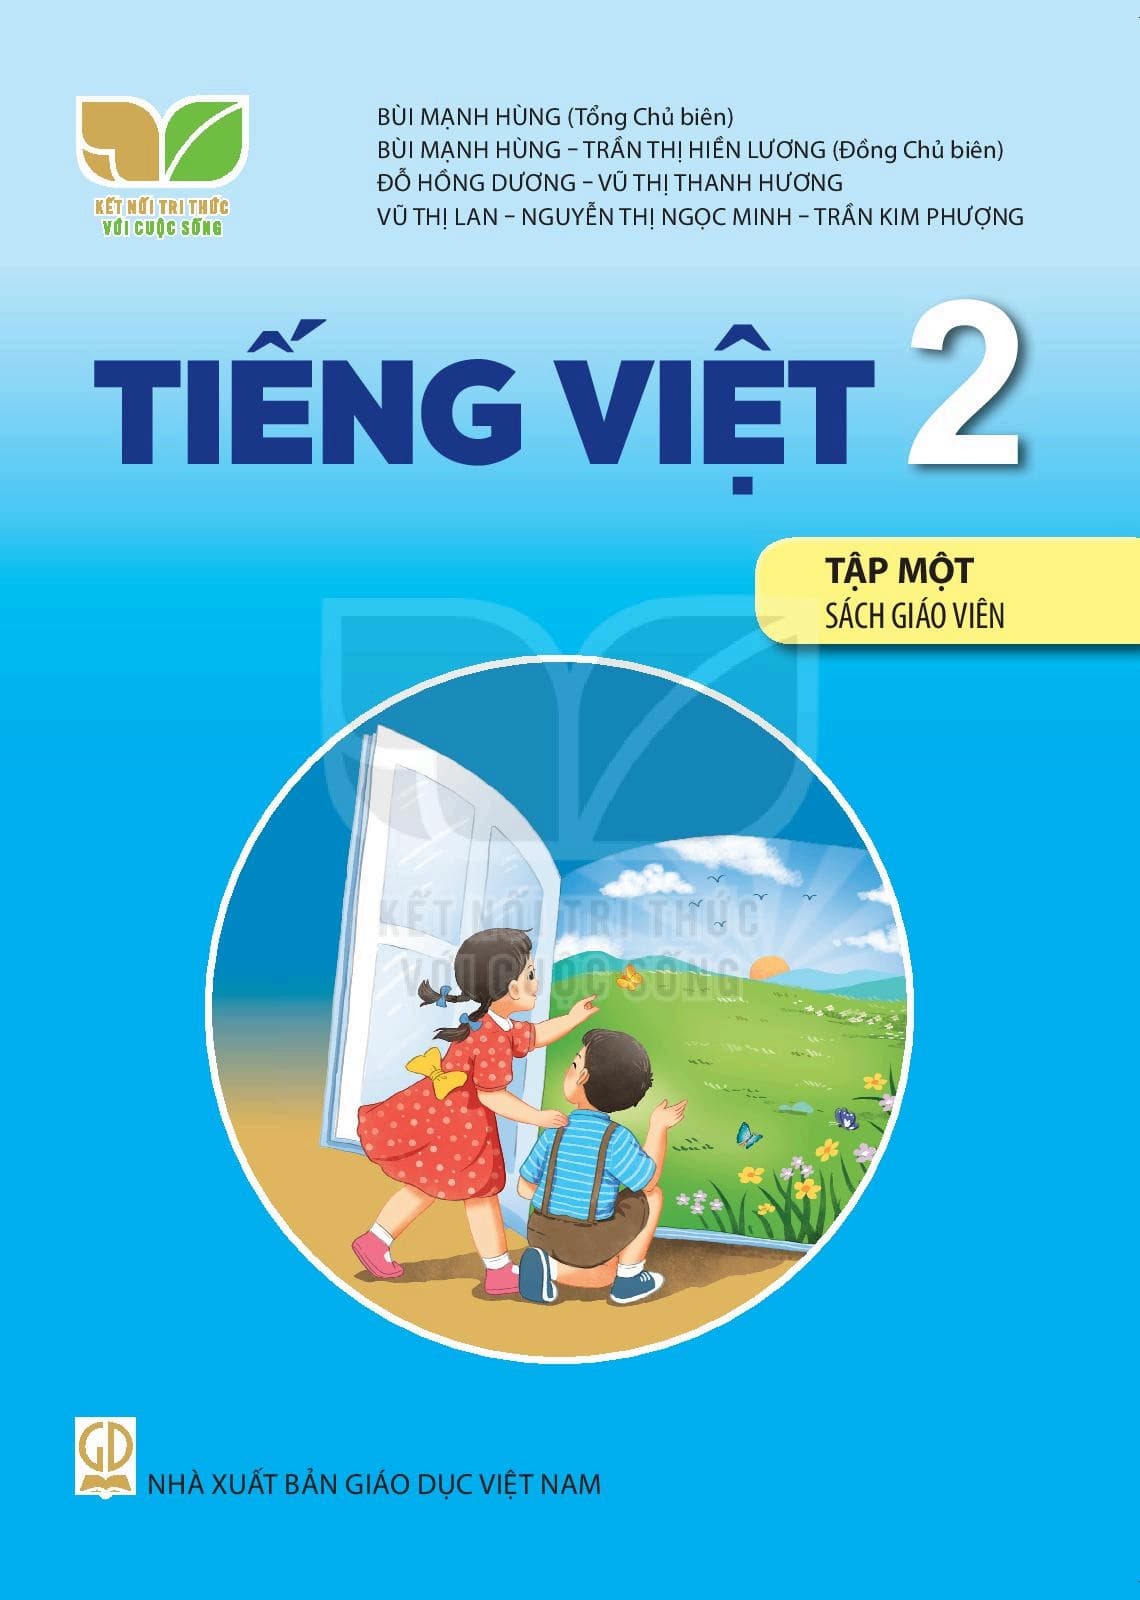 Sách Giáo Viên Tiếng Việt 2 Tập 1 - Kết Nối Tri Thức Với Cuộc Sống